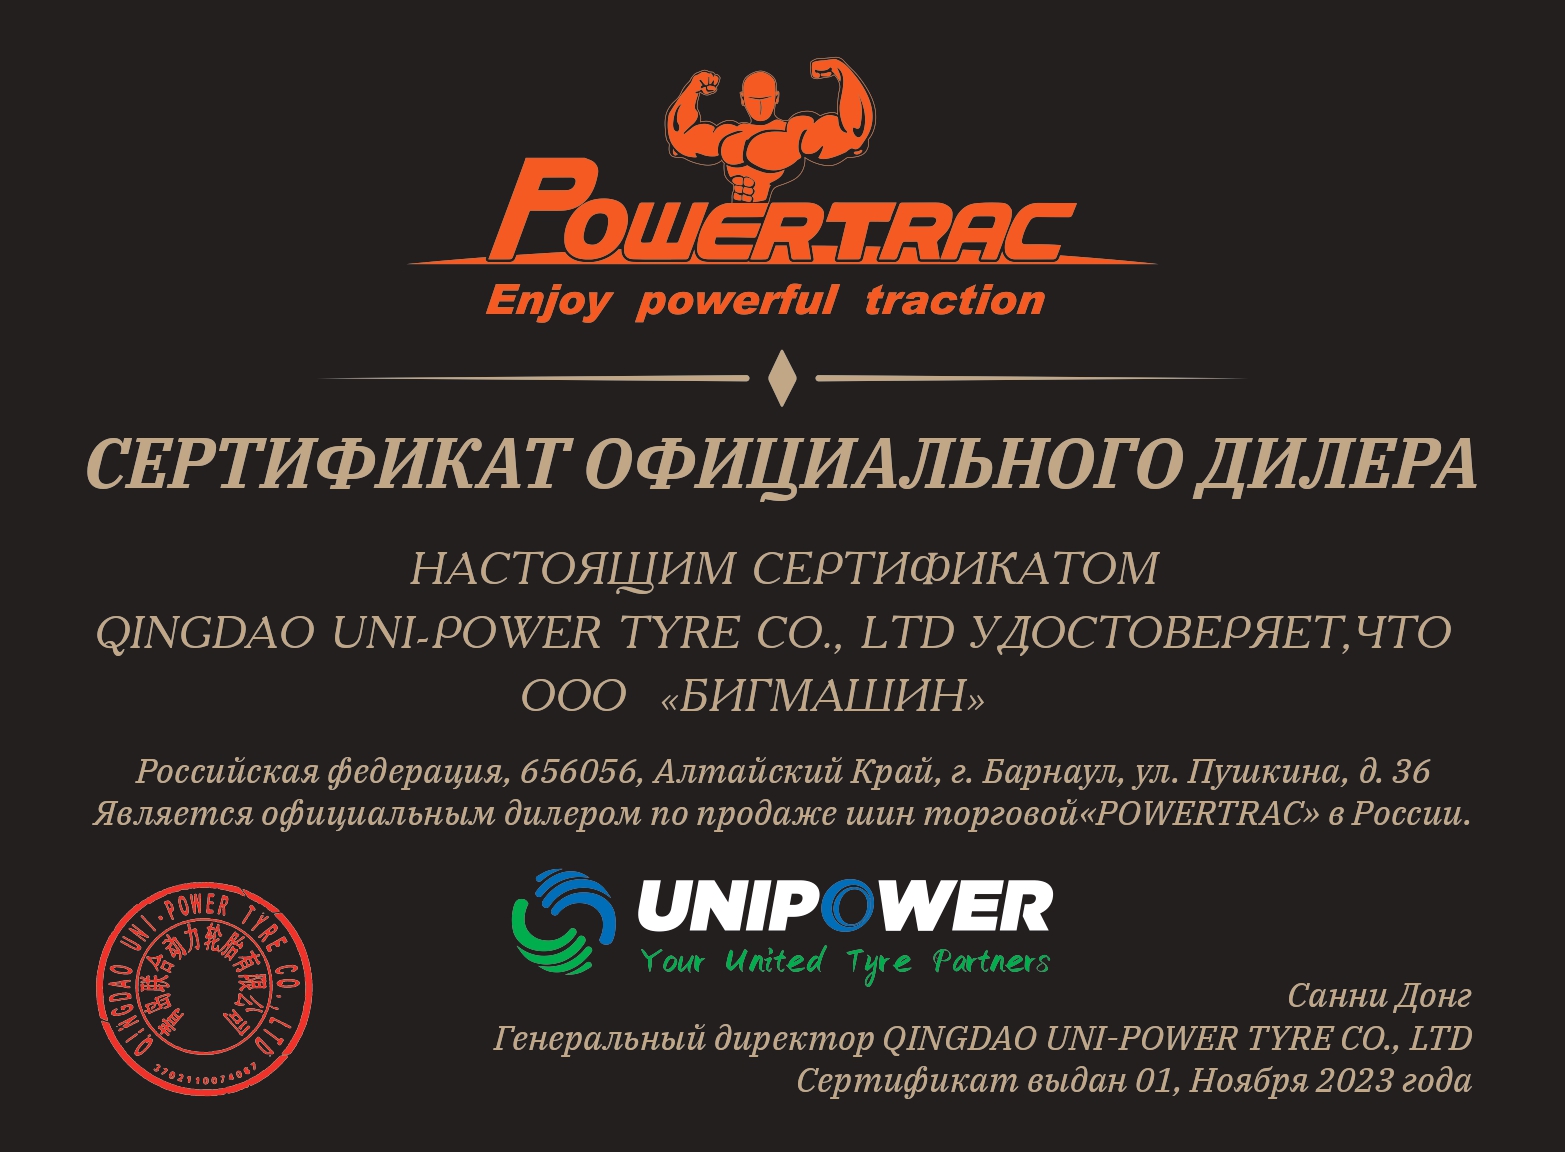 Сайт powertrac.pro является официальным дилером шин Powertrac на территории России.